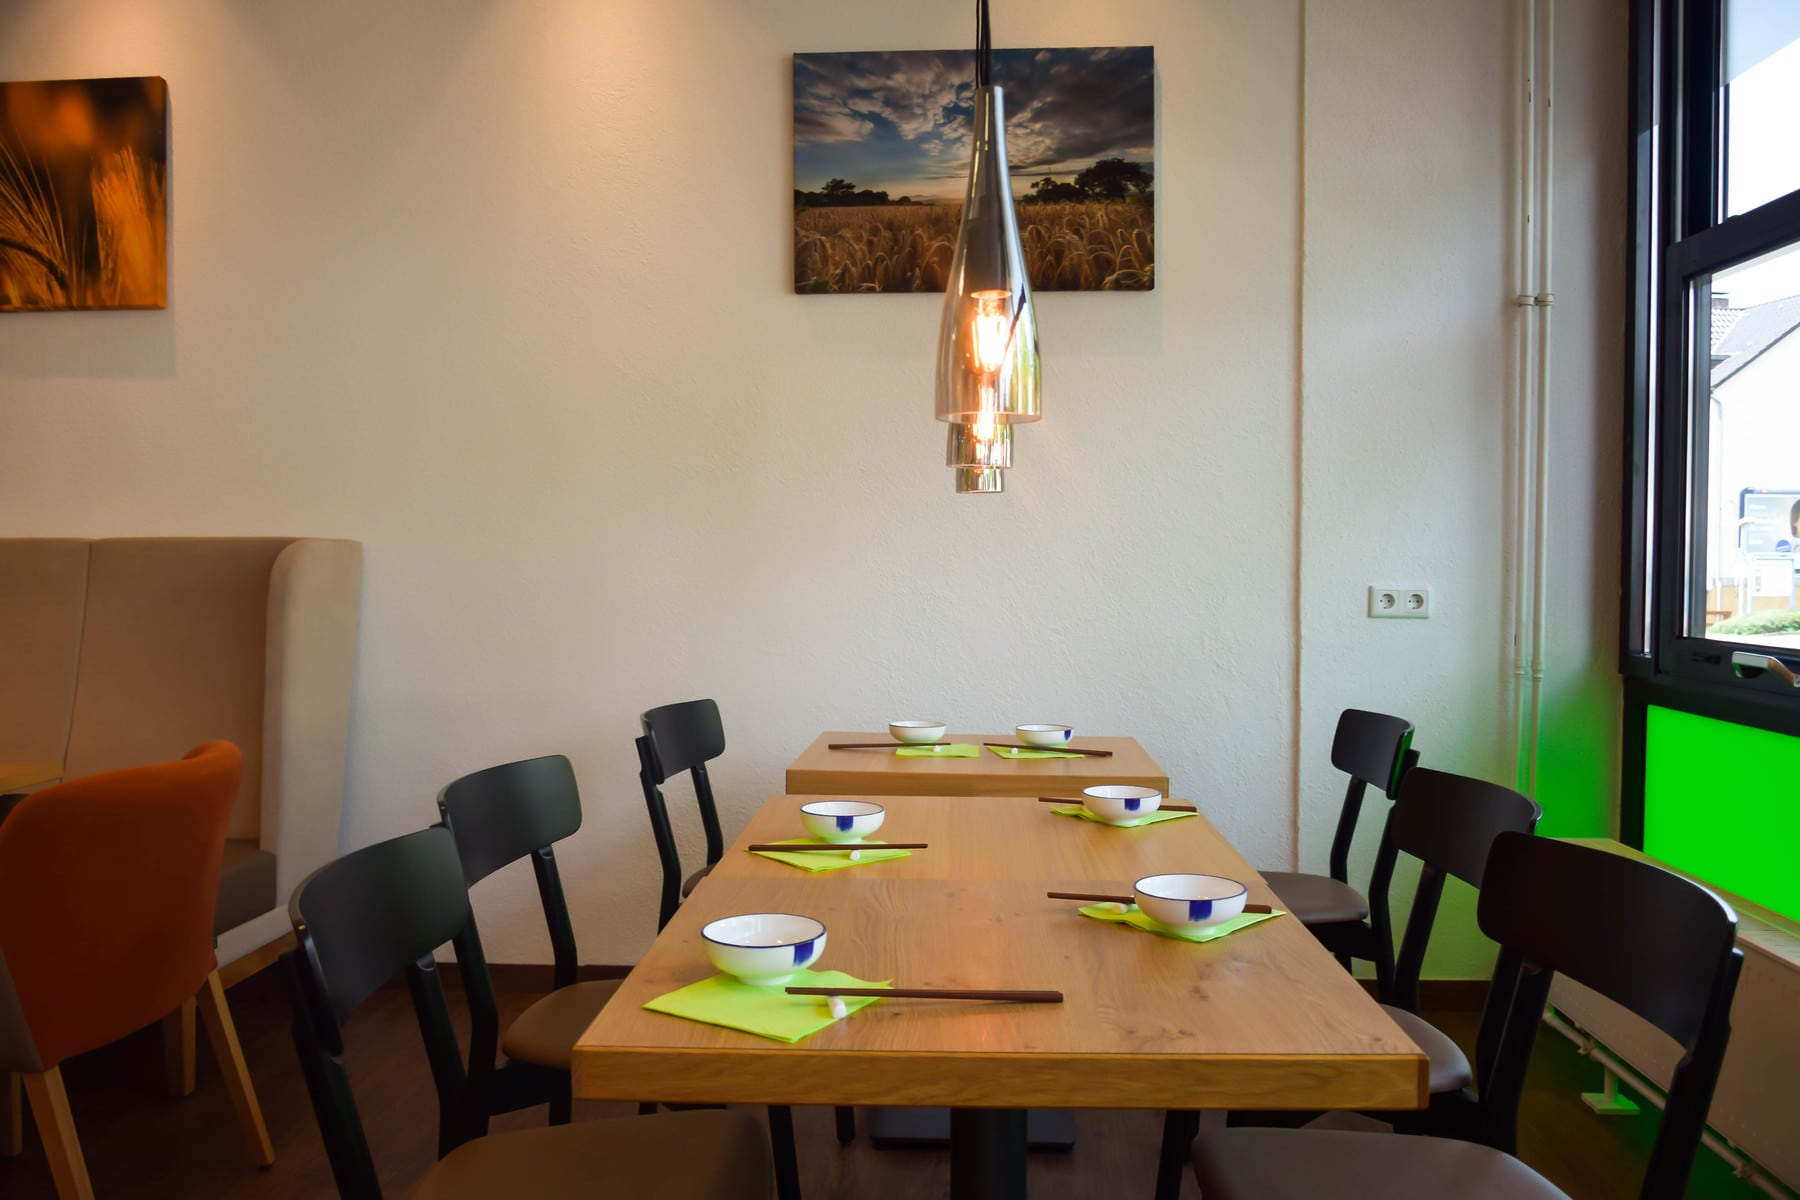 Yezis chinesisches Restaurant in Kassel authentisch chinesisch essen